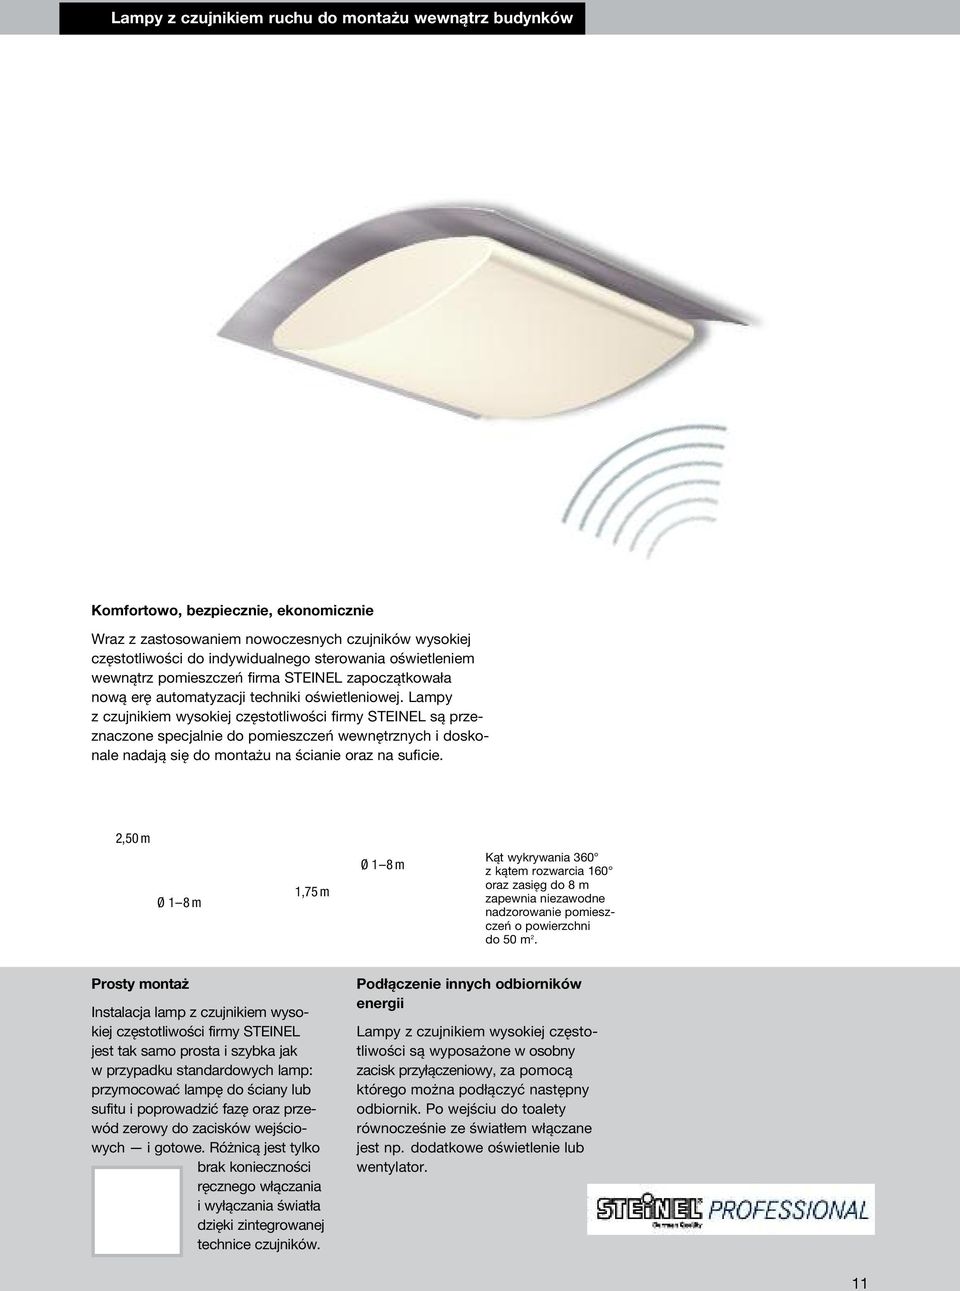 Lampy z czujnikiem wysokiej częstotliwości firmy STEINEL są przeznaczone specjalnie do pomieszczeń wewnętrznych i doskonale nadają się do montażu na ścianie oraz na suficie.